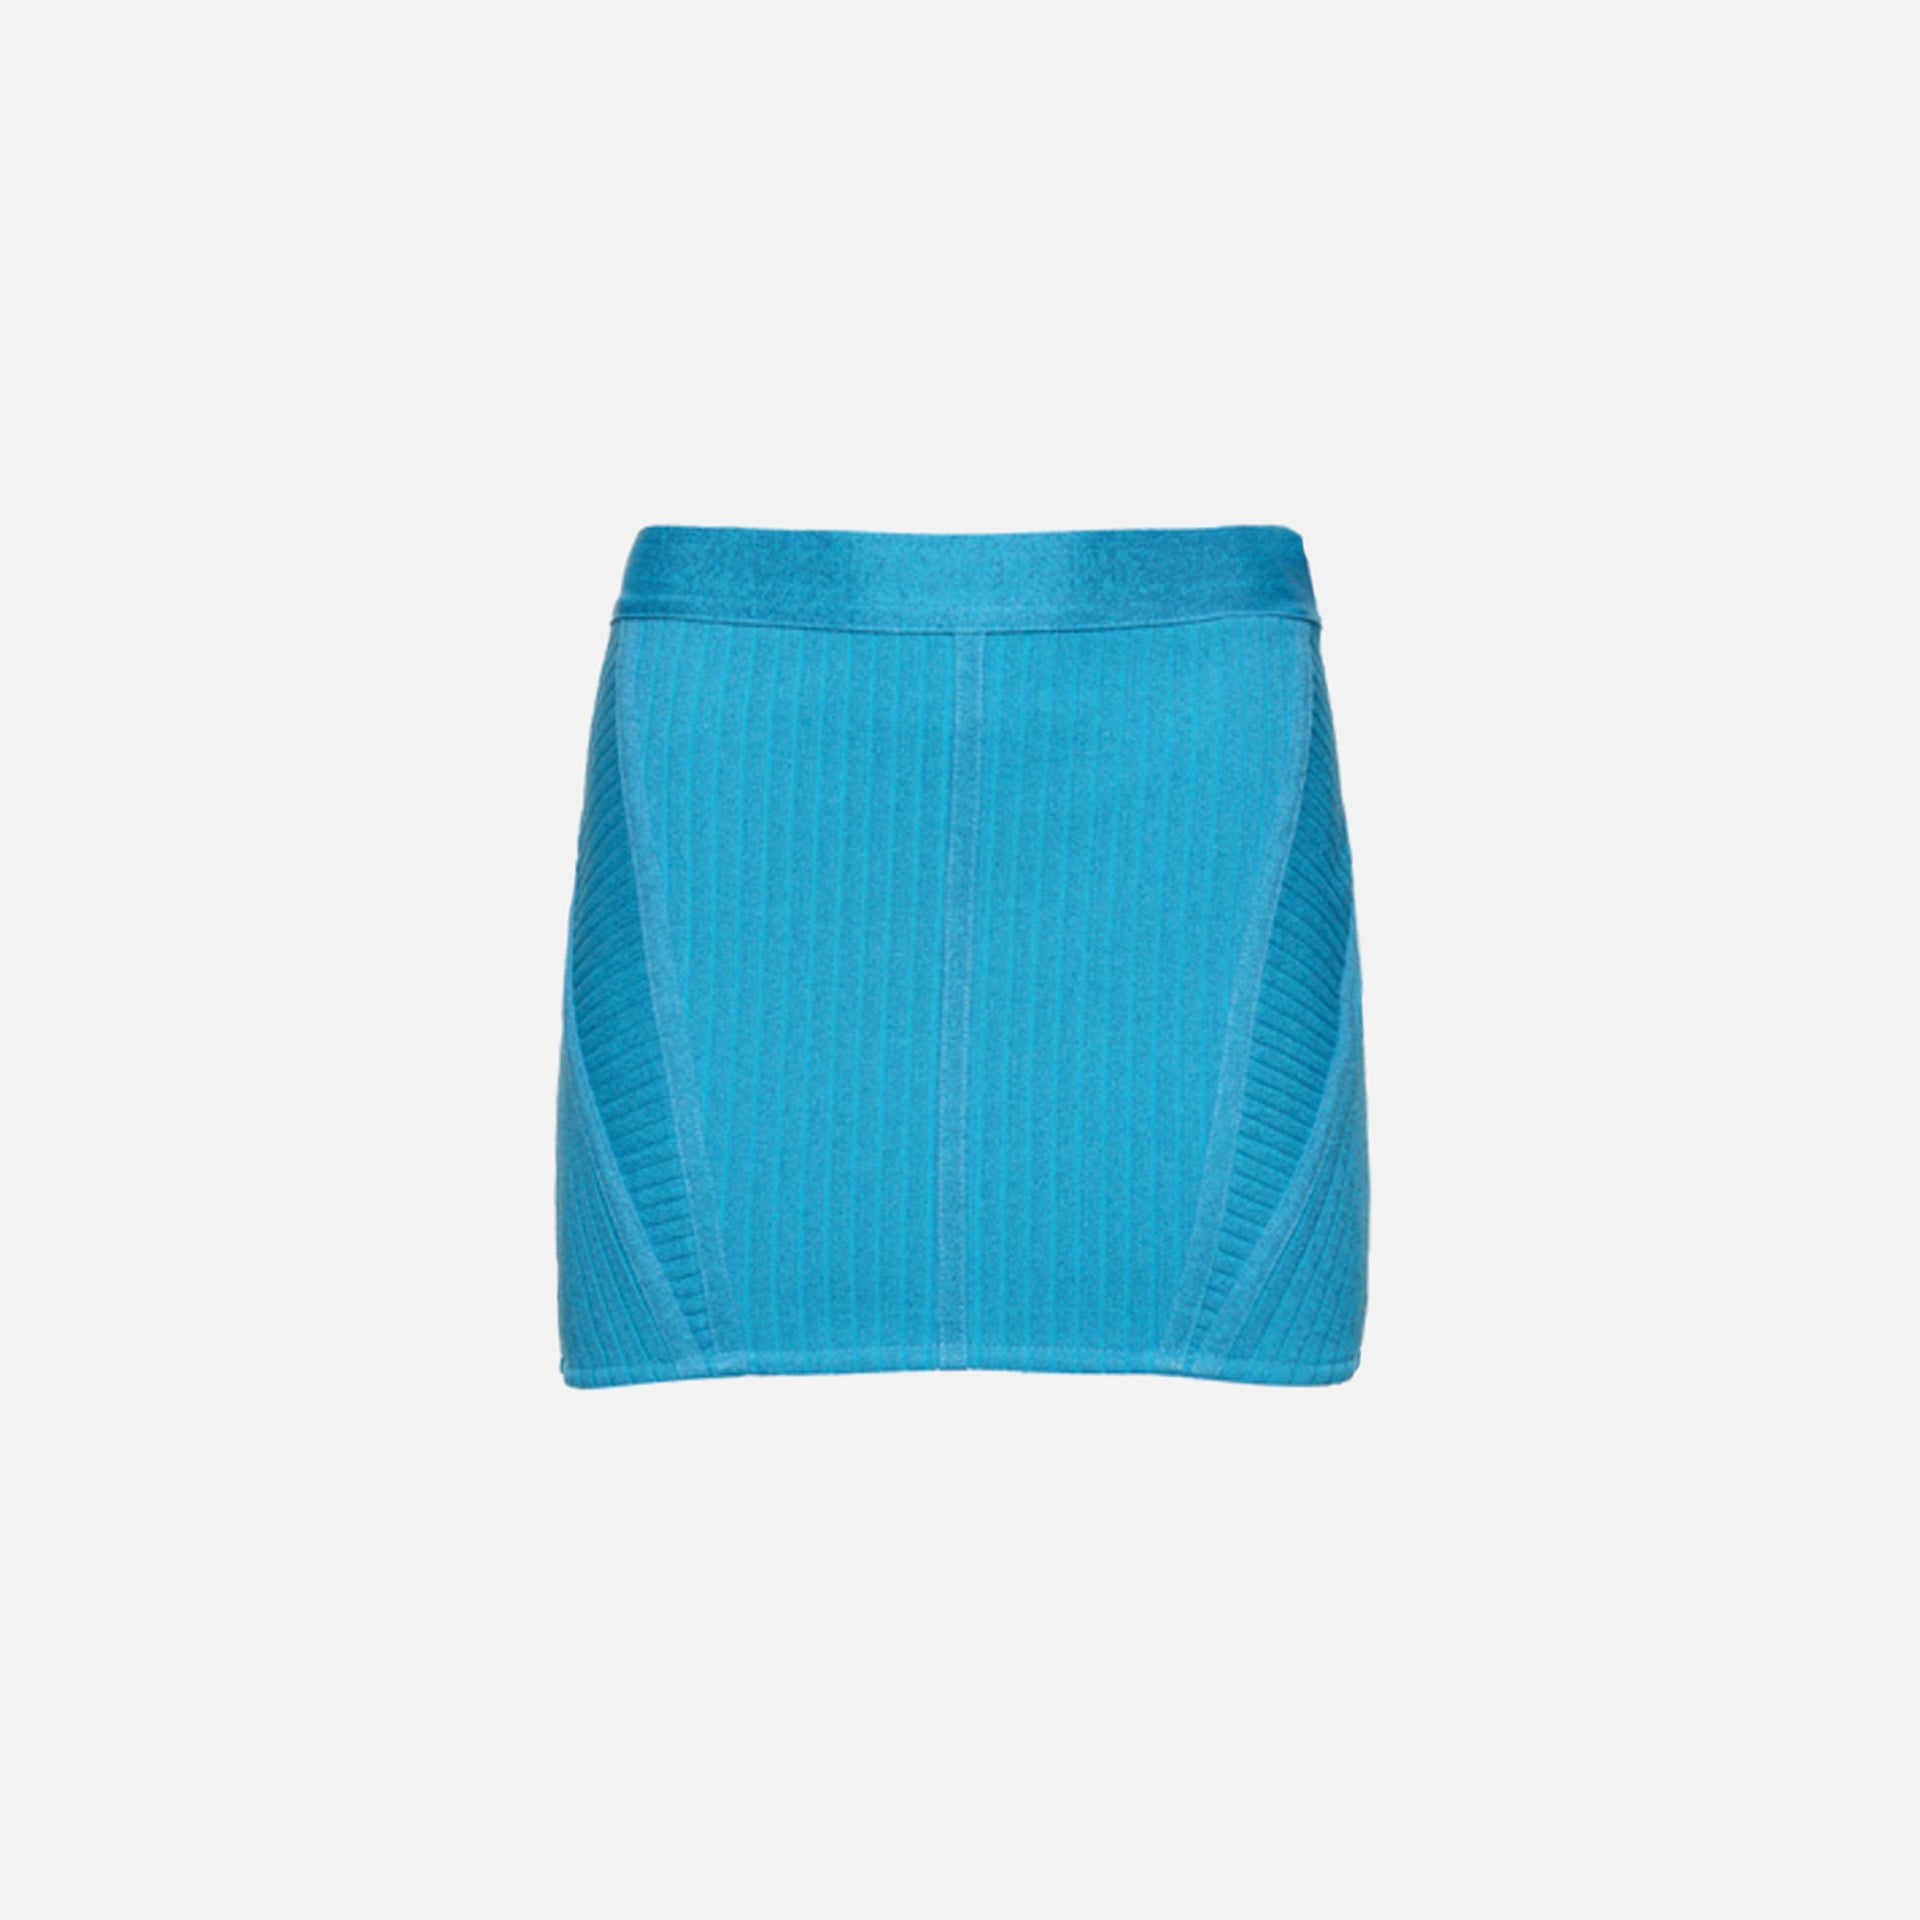 Retrofete Taressa Skirt - Aqua Blue